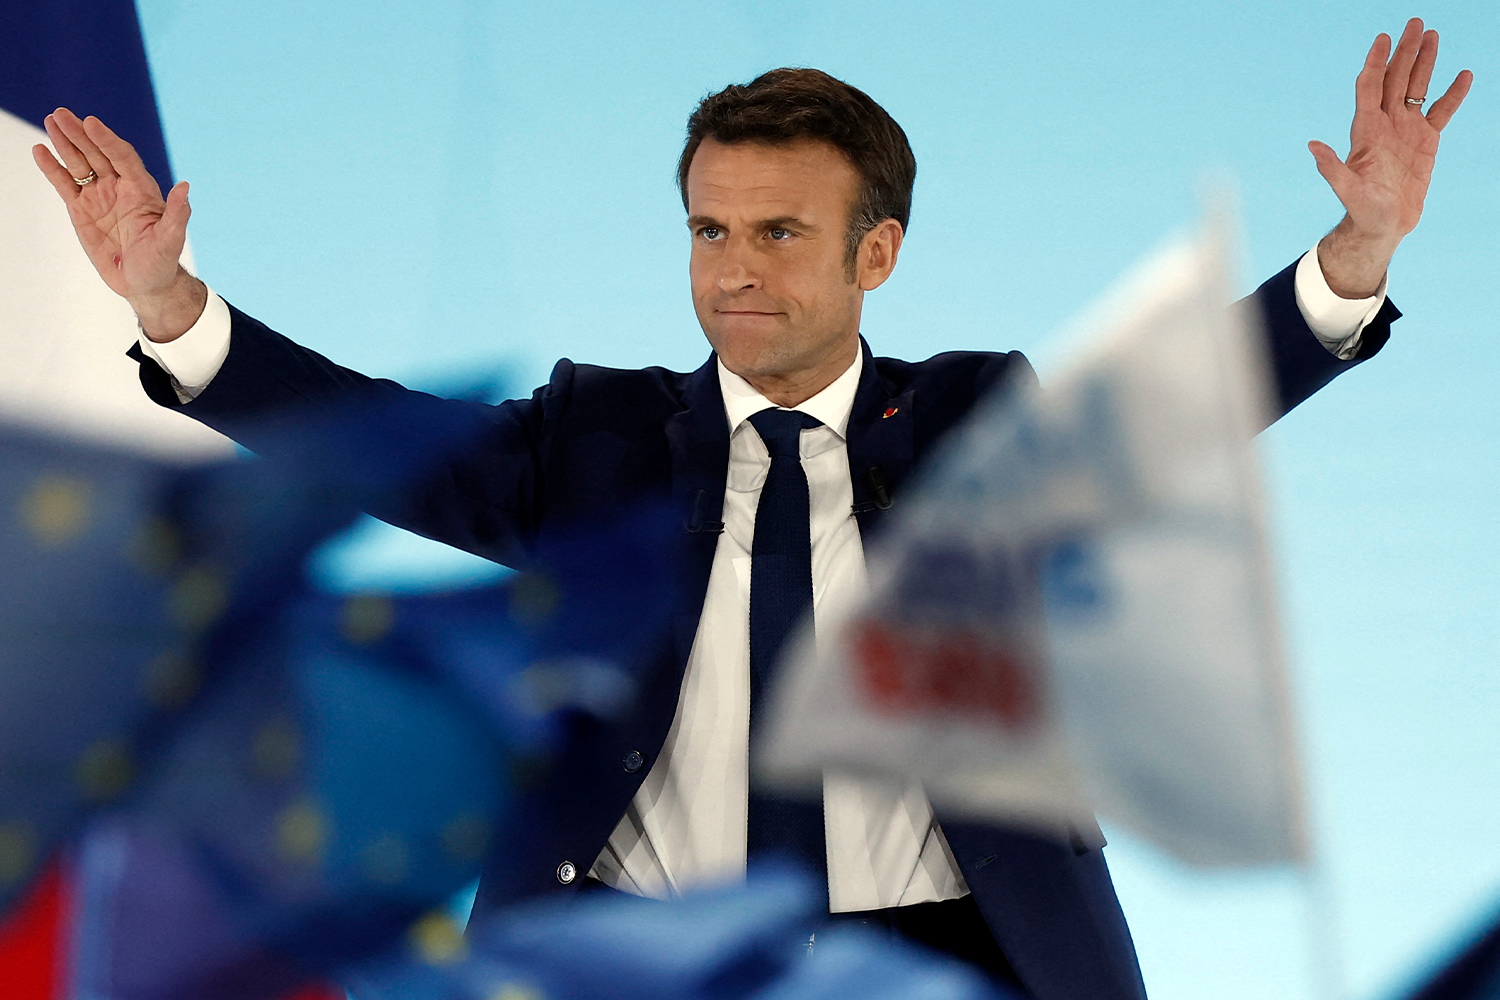 El candidato presidencial Emmanuel Macron ganó las elecciones presidenciales de 2017 en Francia